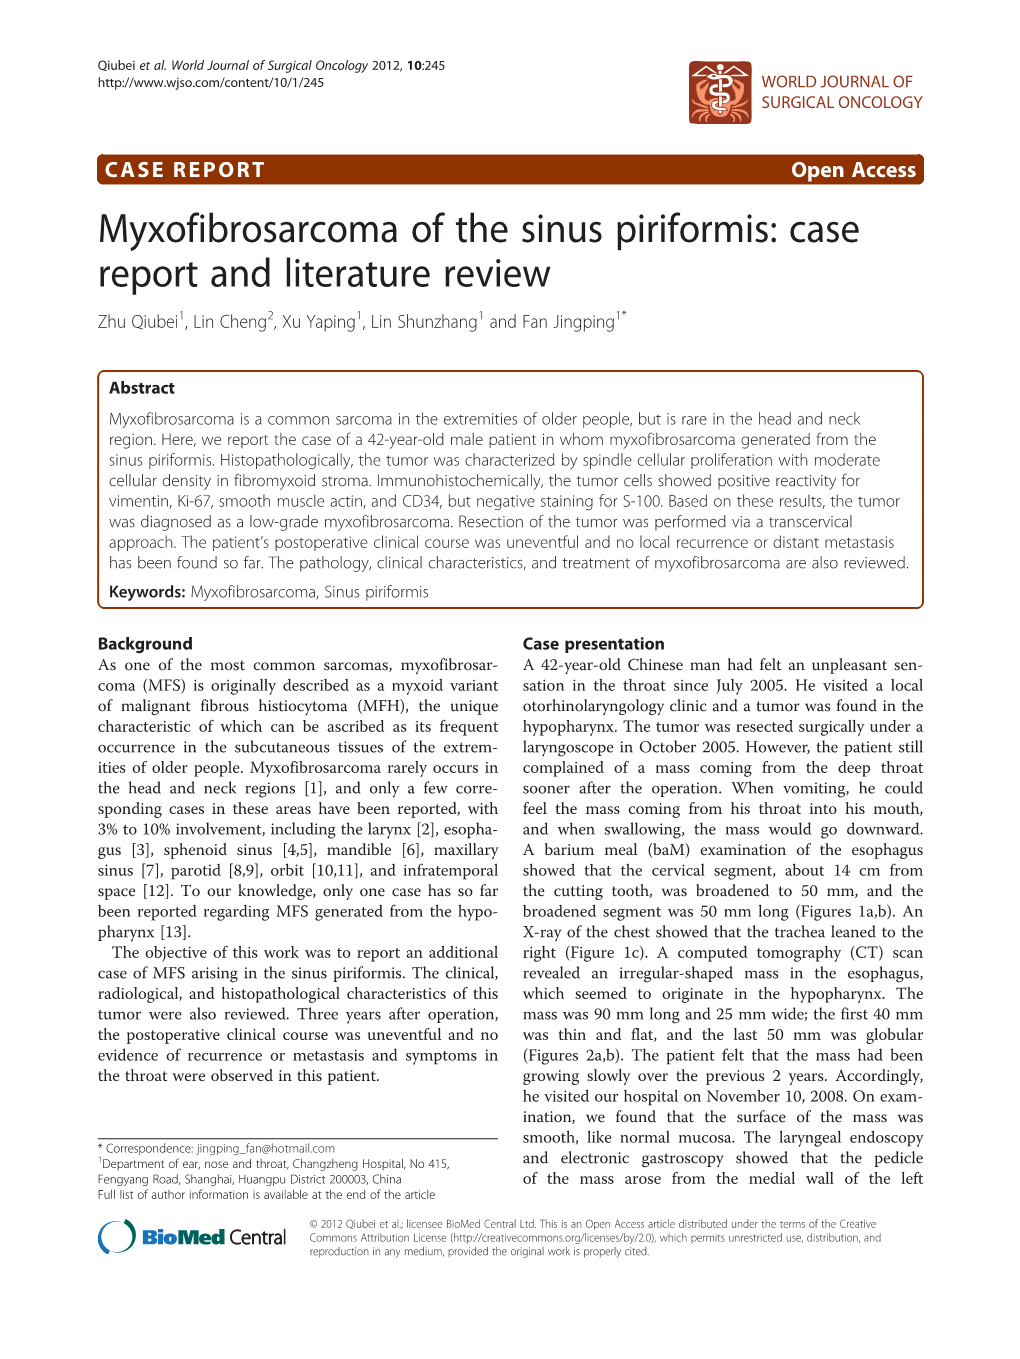 Myxofibrosarcoma of the Sinus Piriformis: Case Report and Literature Review Zhu Qiubei1, Lin Cheng2, Xu Yaping1, Lin Shunzhang1 and Fan Jingping1*